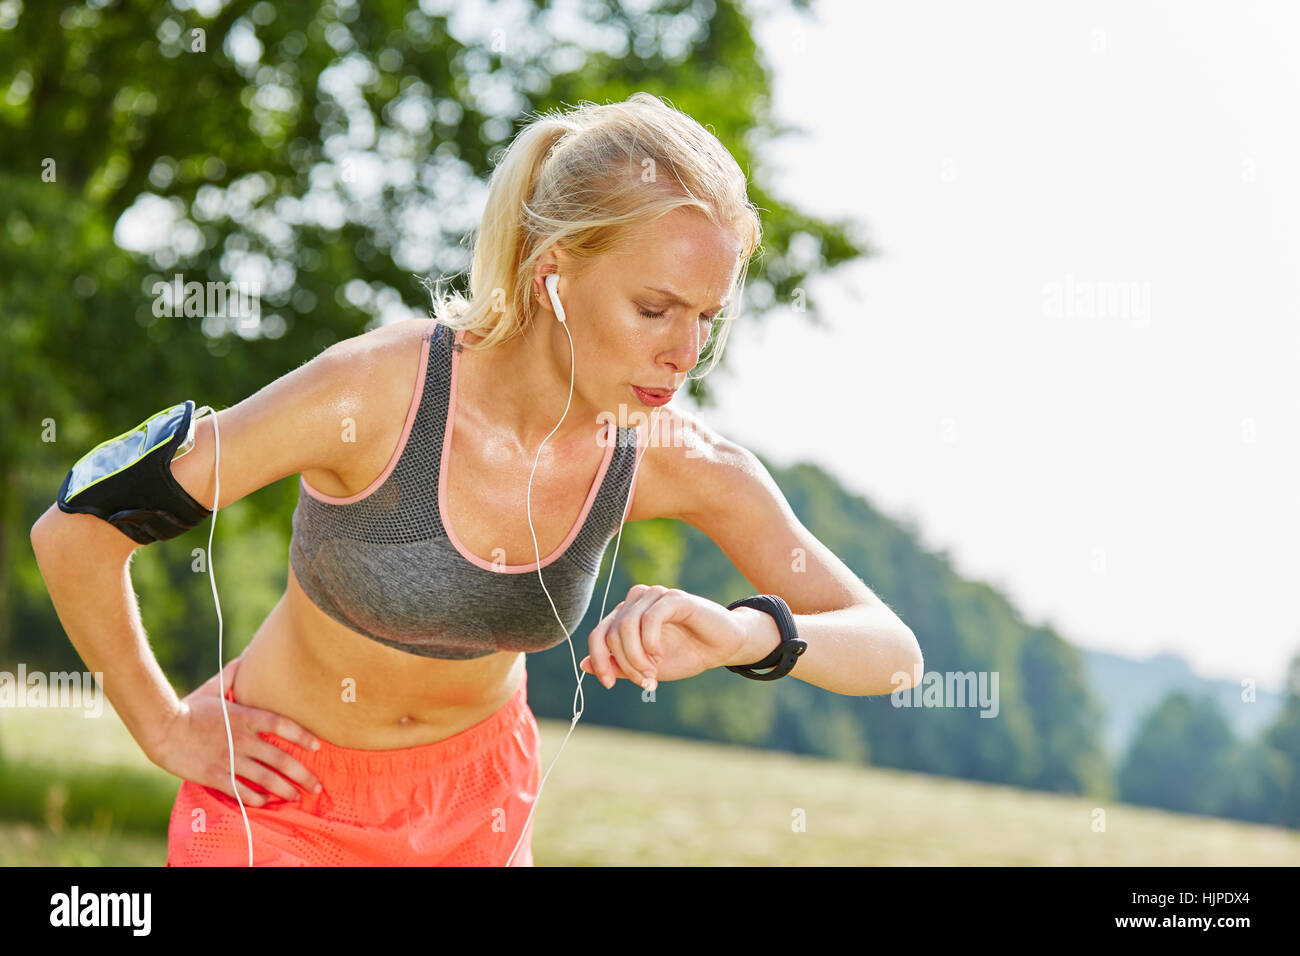 La donna controlla le prestazioni con tracker dopo un allenamento fitness Foto Stock